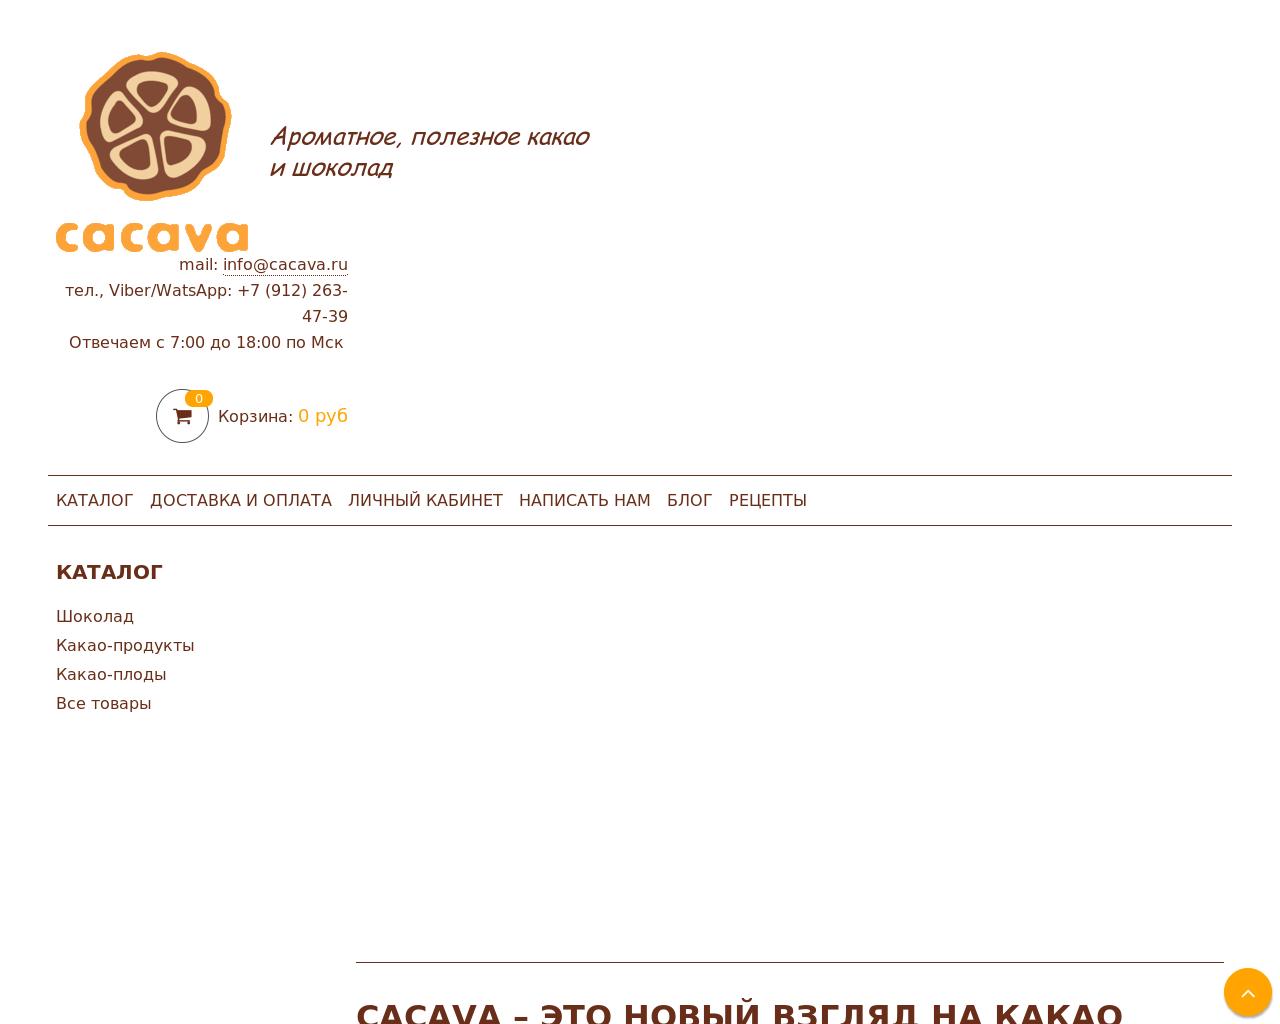 Изображение сайта cacava.ru в разрешении 1280x1024